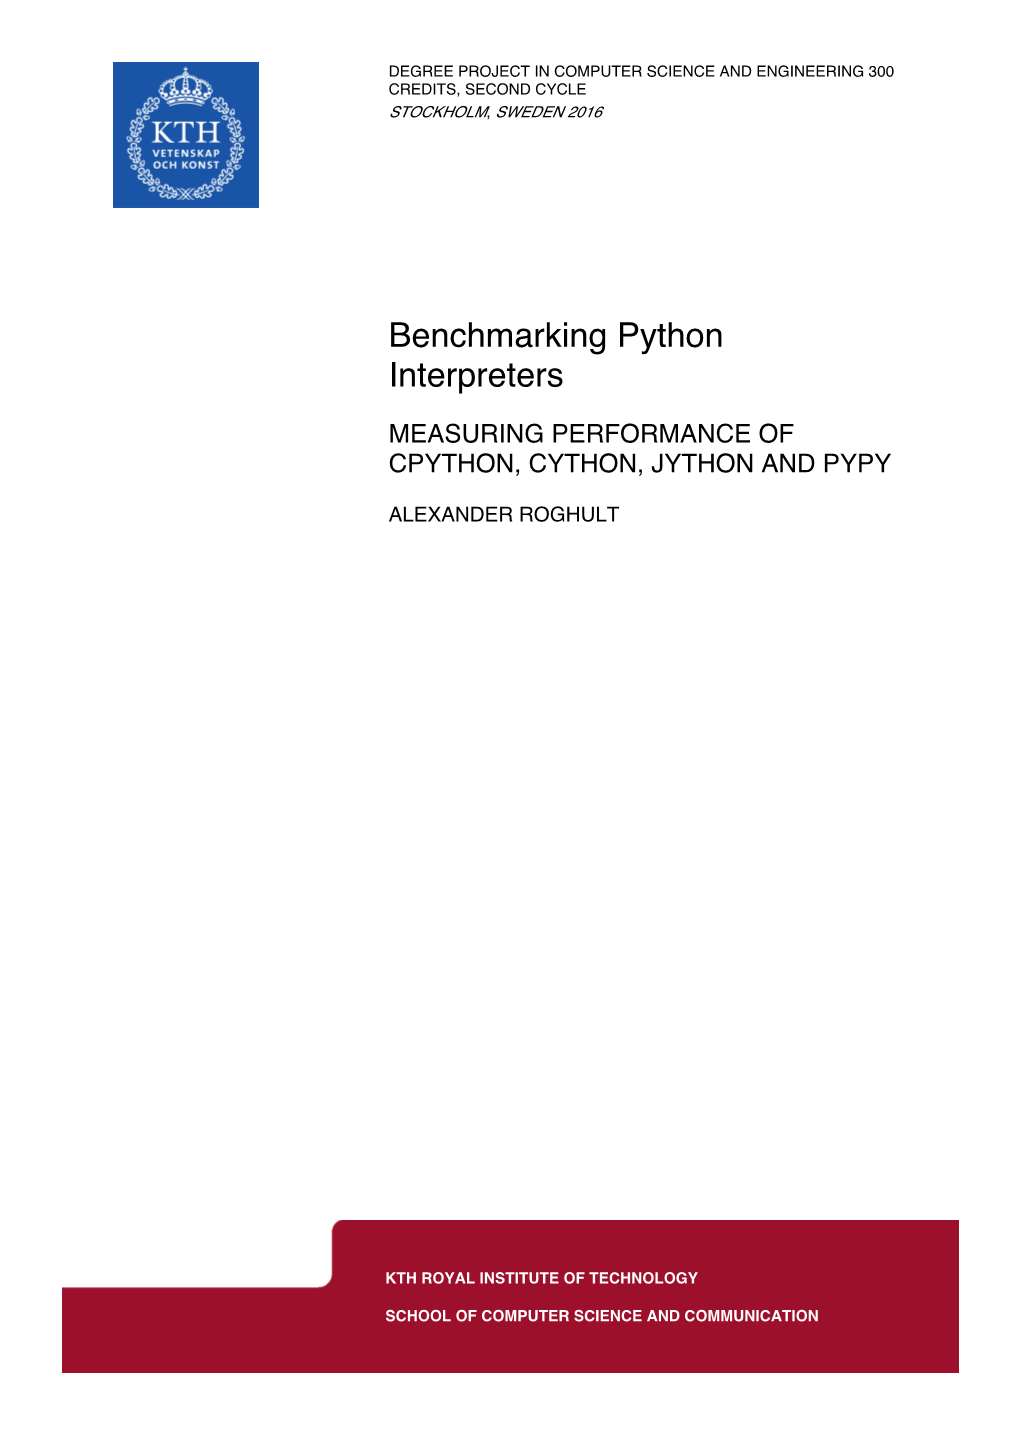 Benchmarking Python Interpreters